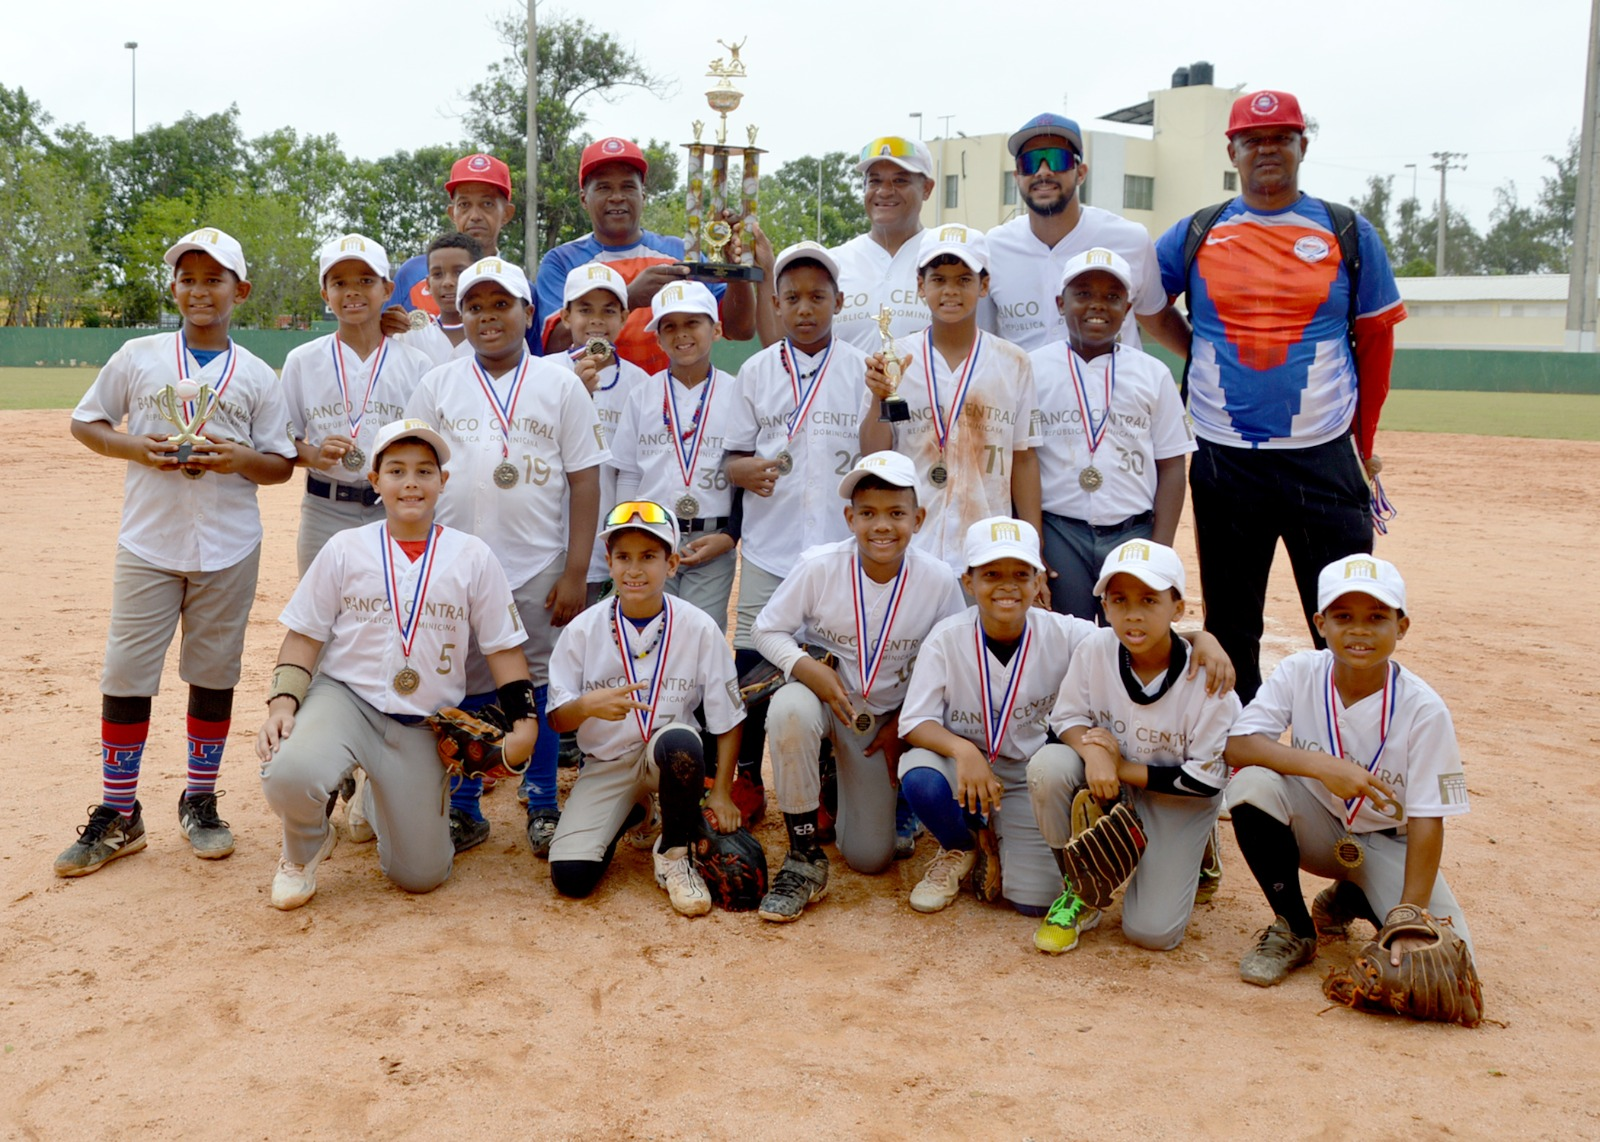 Banco Central se corona campeón en Torneo Béisbol Infantil 9-10 años